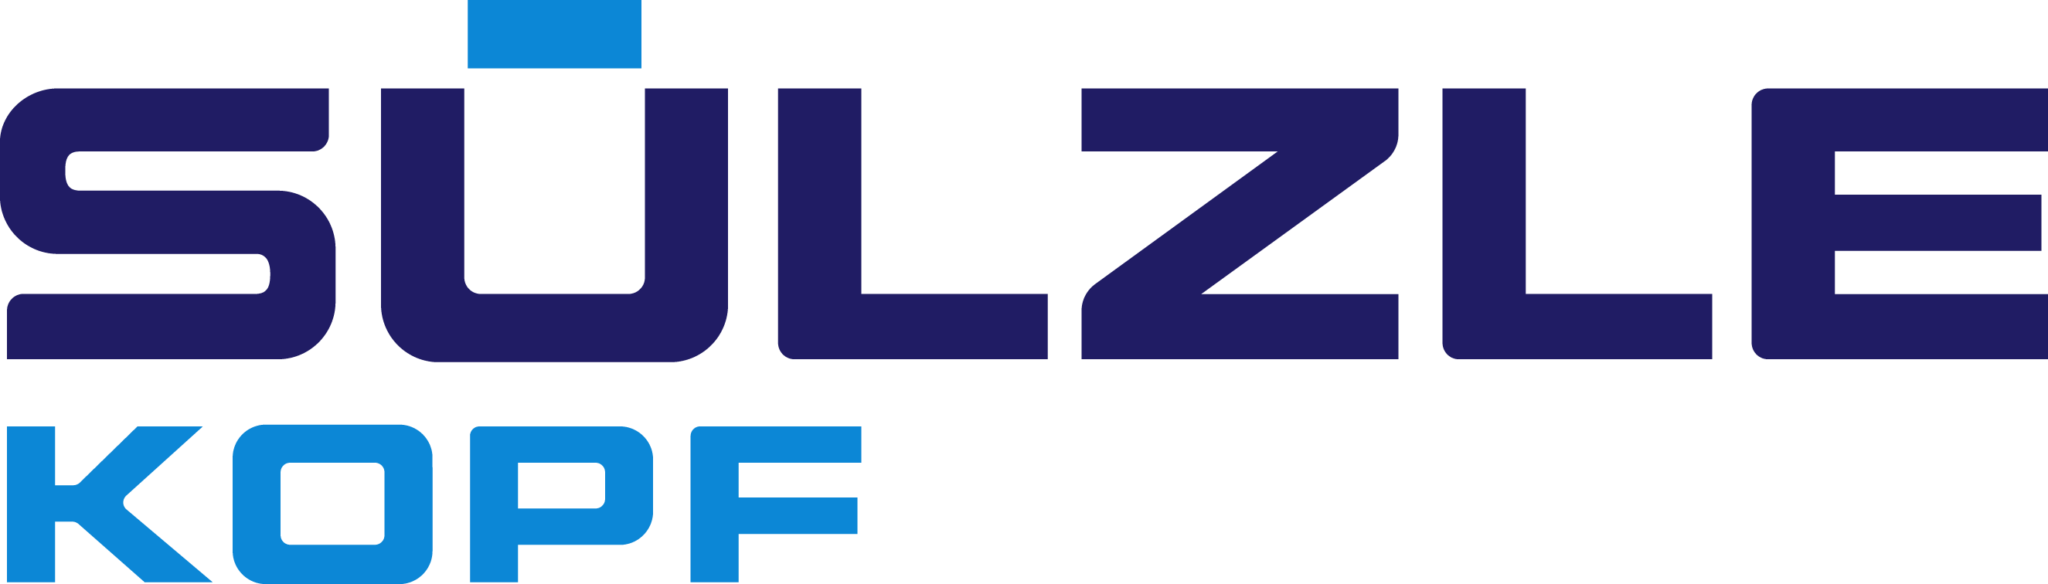 Suelzle Kopf-logo